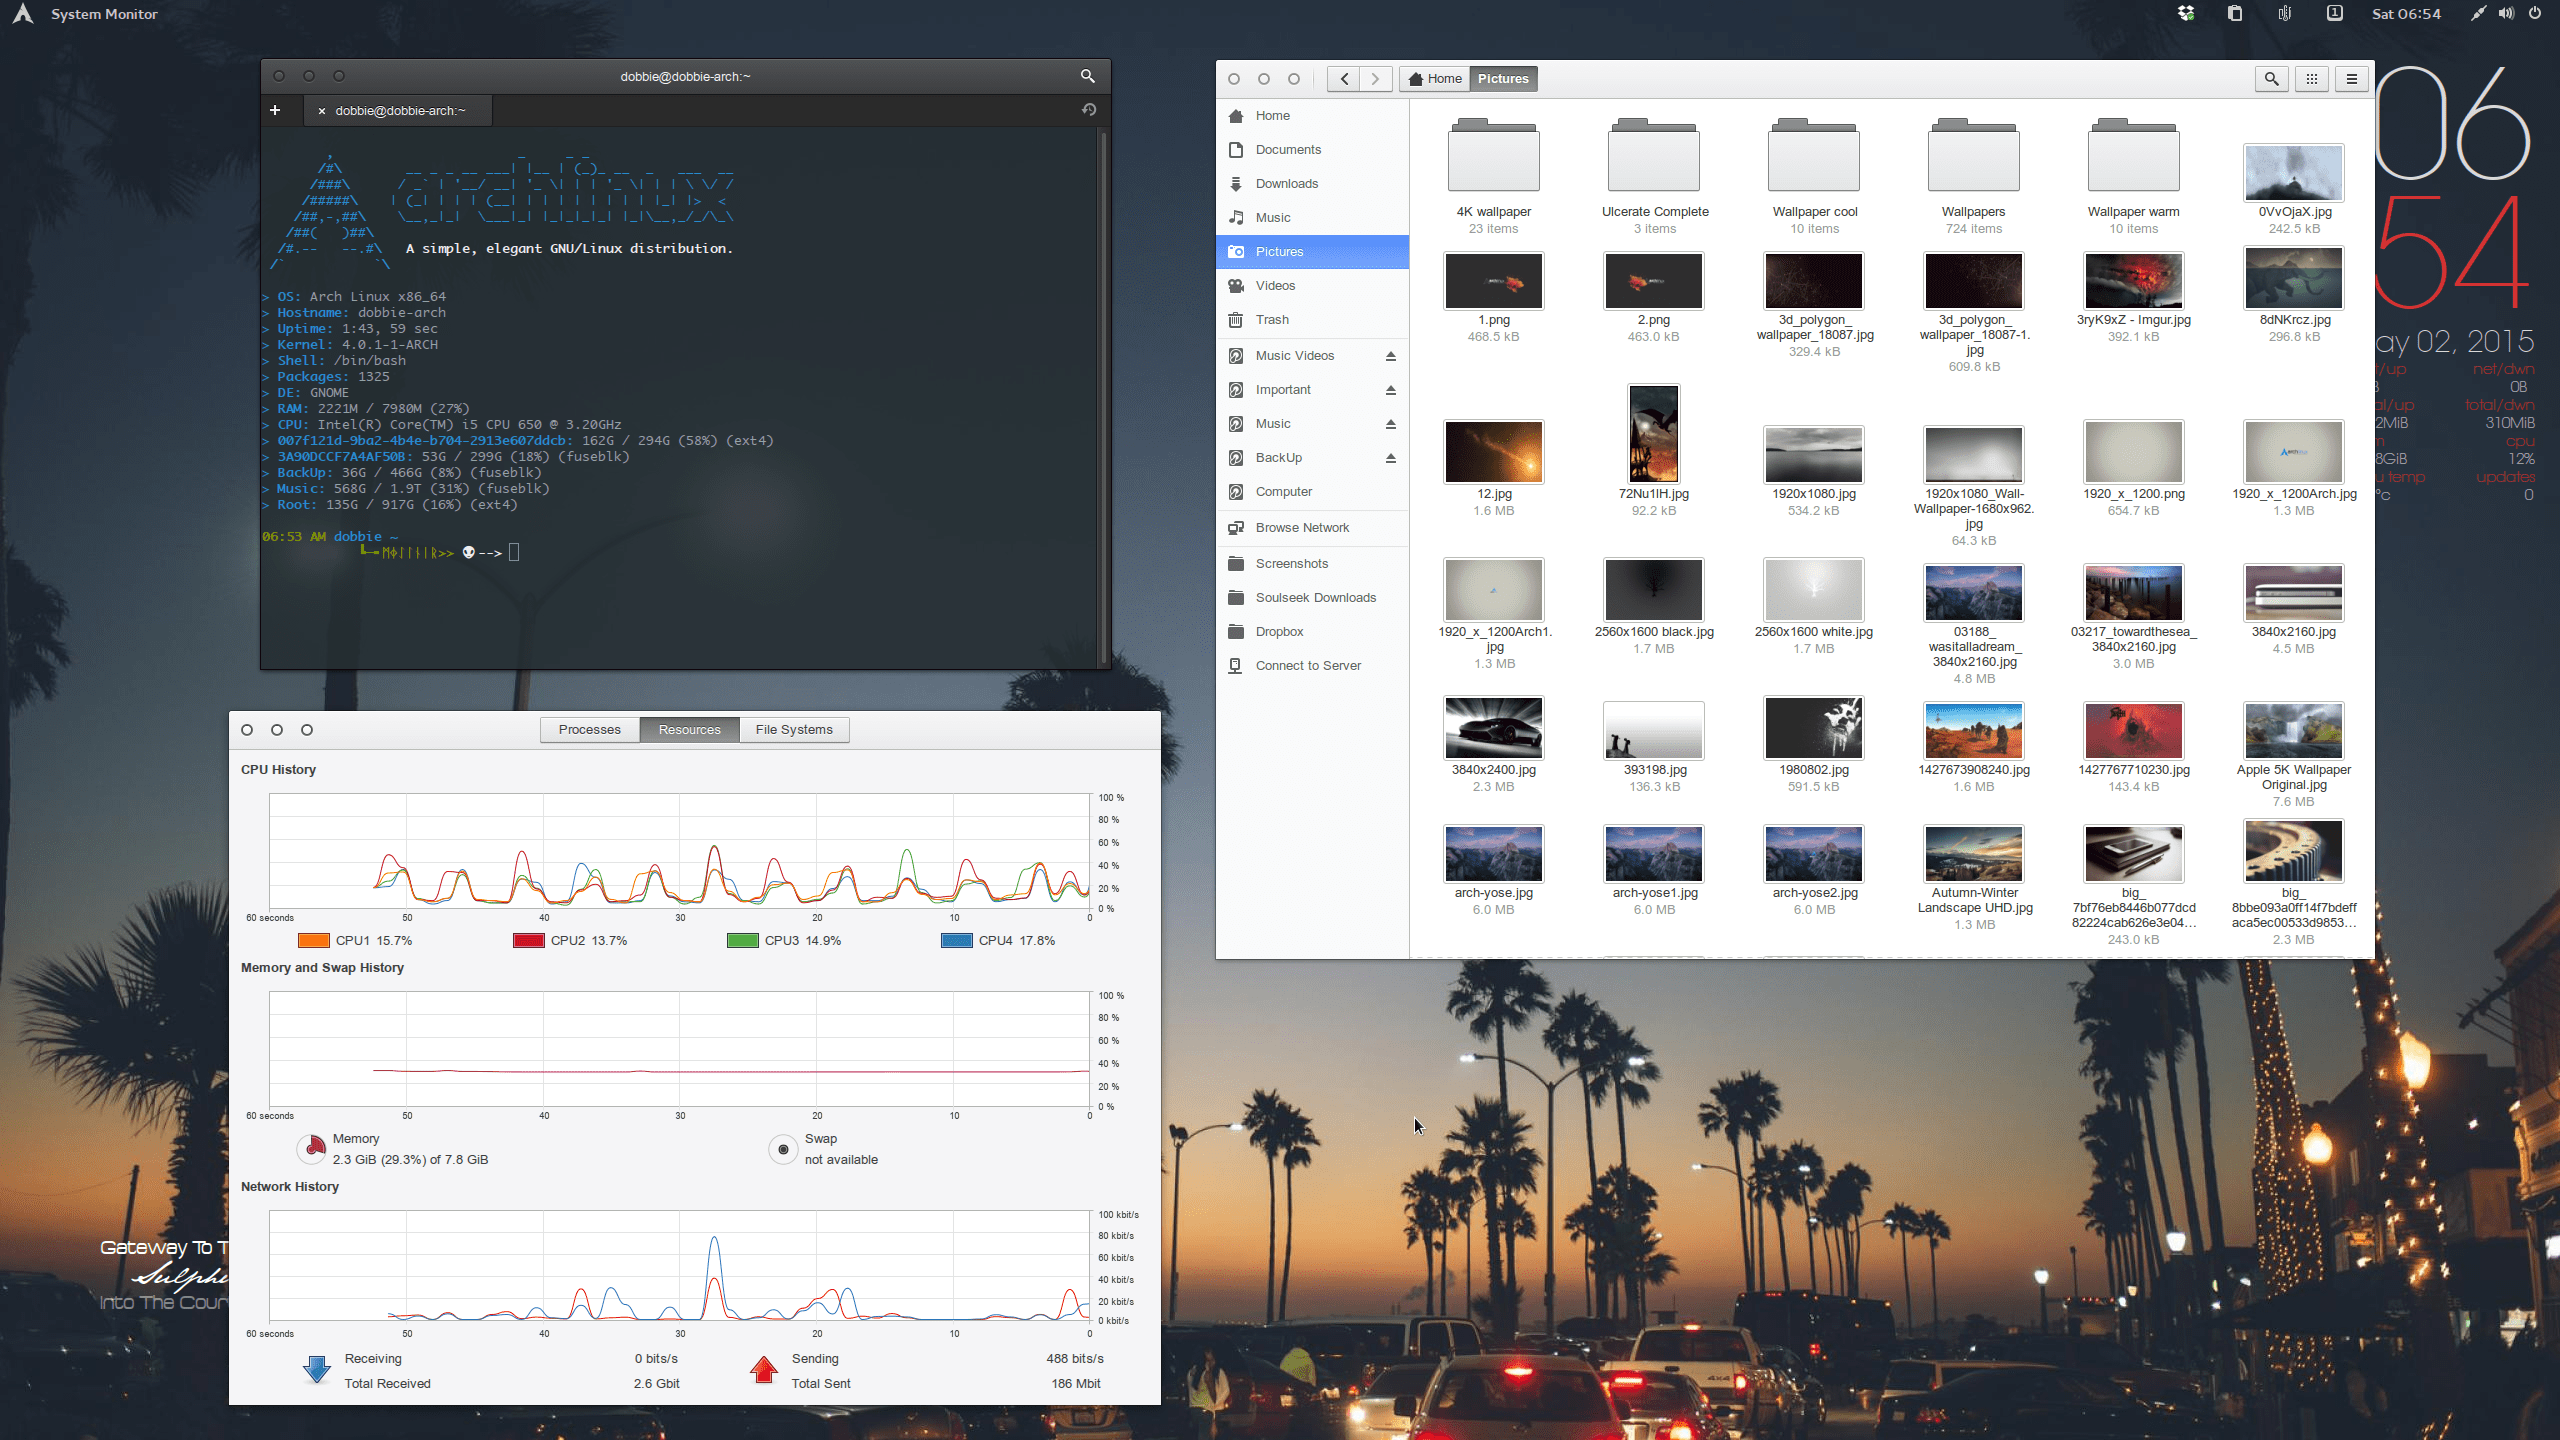 The Midsummer Night’s Desktop